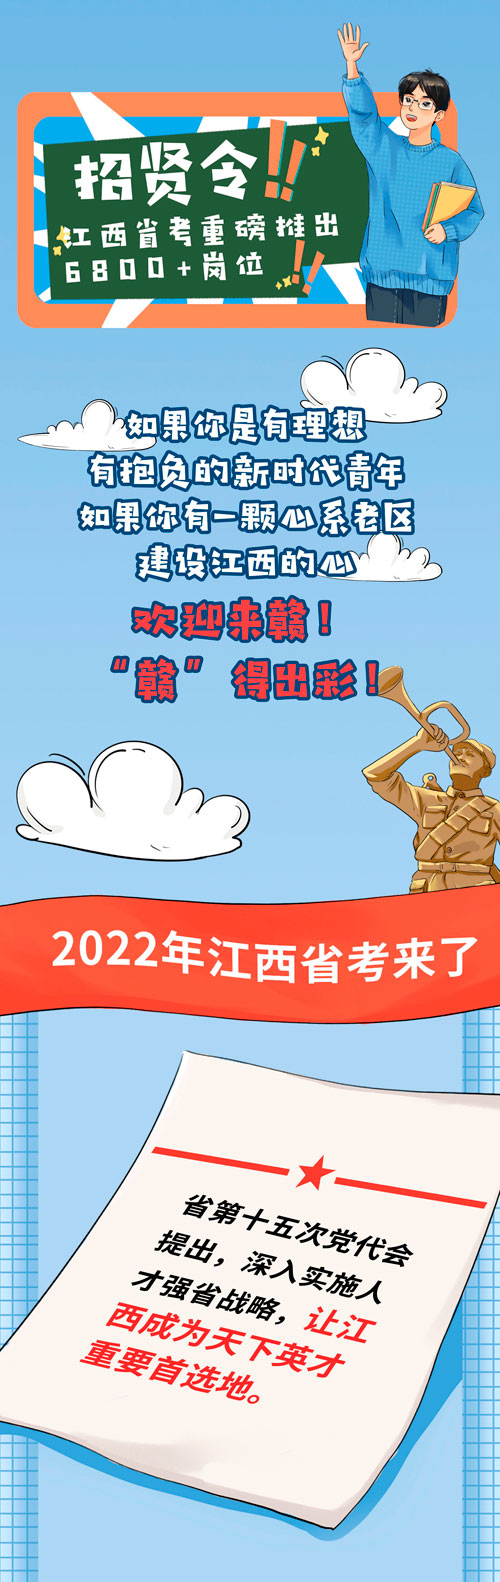 6800+岗位! 2022年江西省考来了!